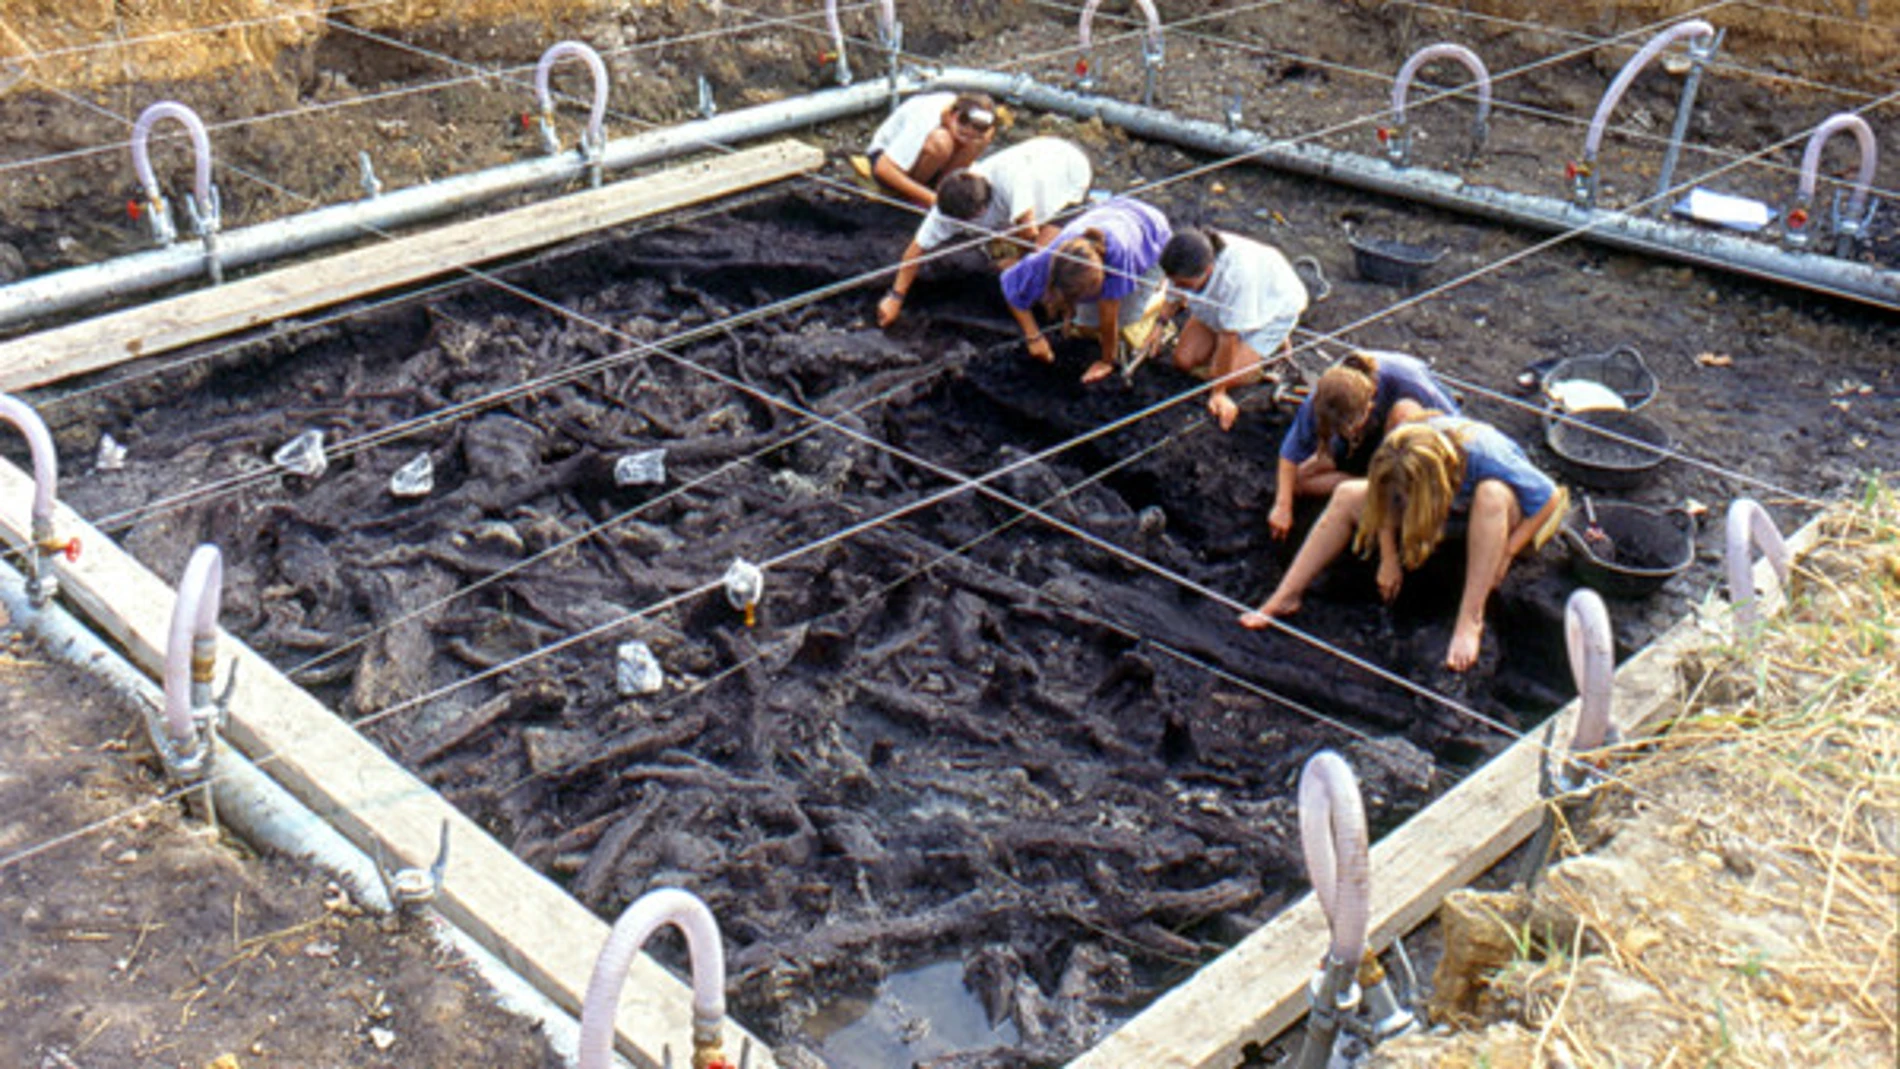 Vista general de la excavación del sector B de La Draga, donde han aparecido los hongos yesqueros